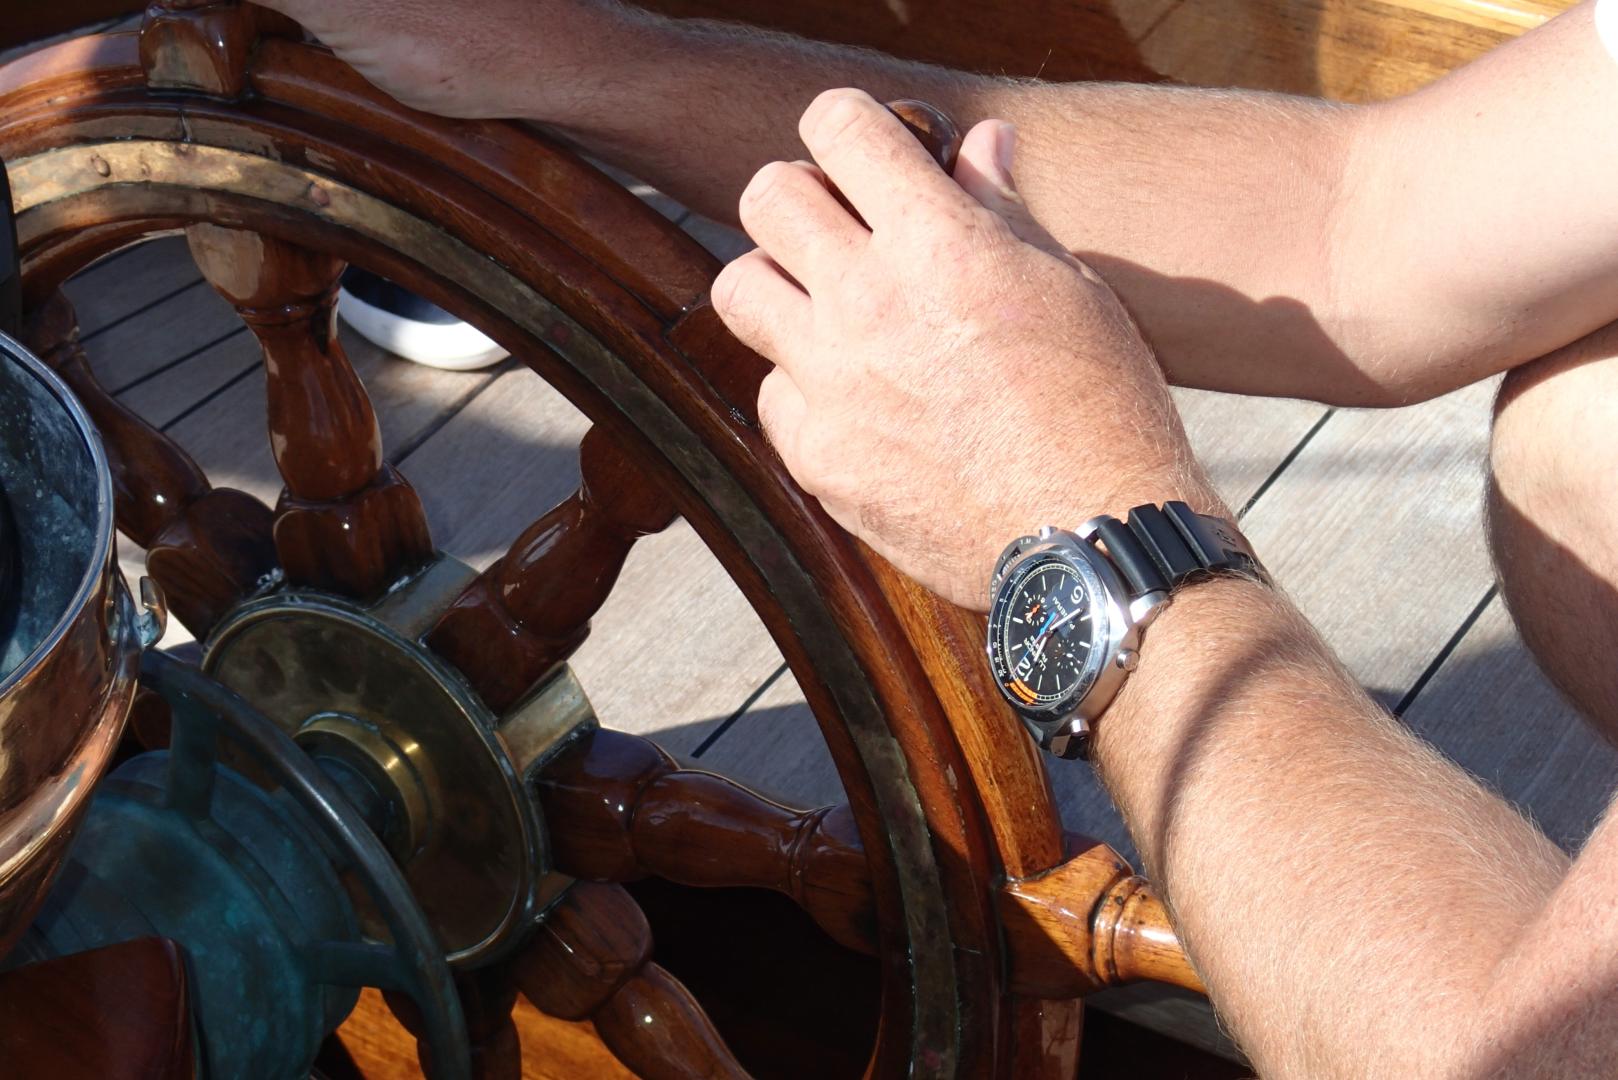 Panerai orologio regata a bordo di Eilean 
ph.Luzzatto©